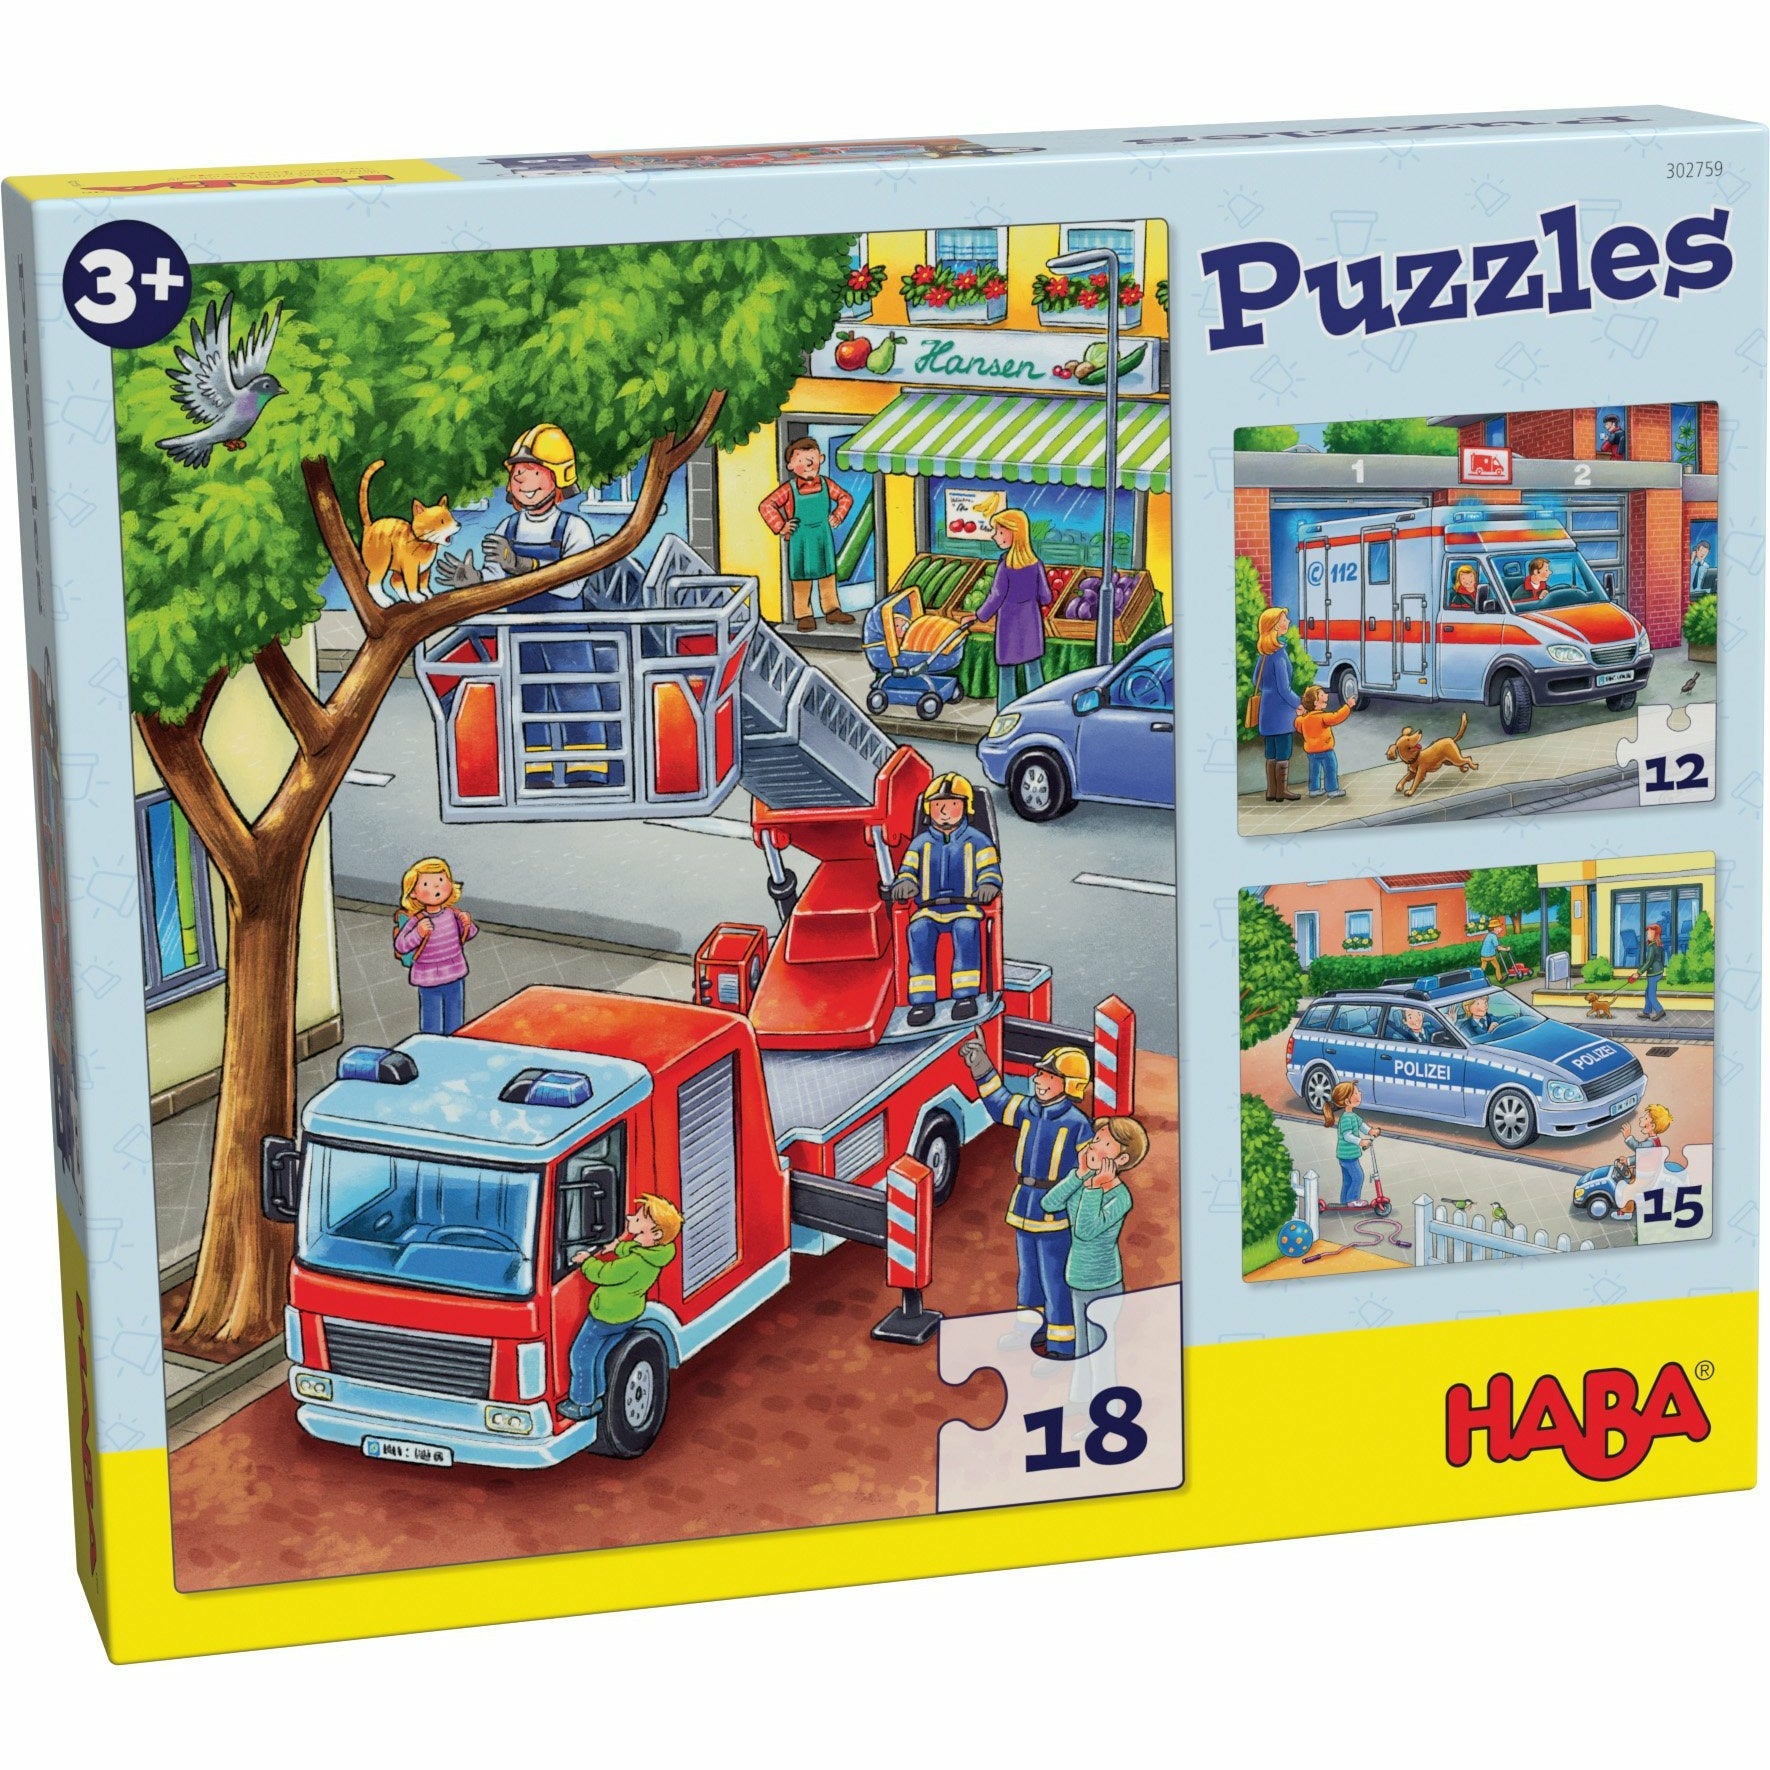 HABA | Puzzles Polizei, Feuerwehr & Co.